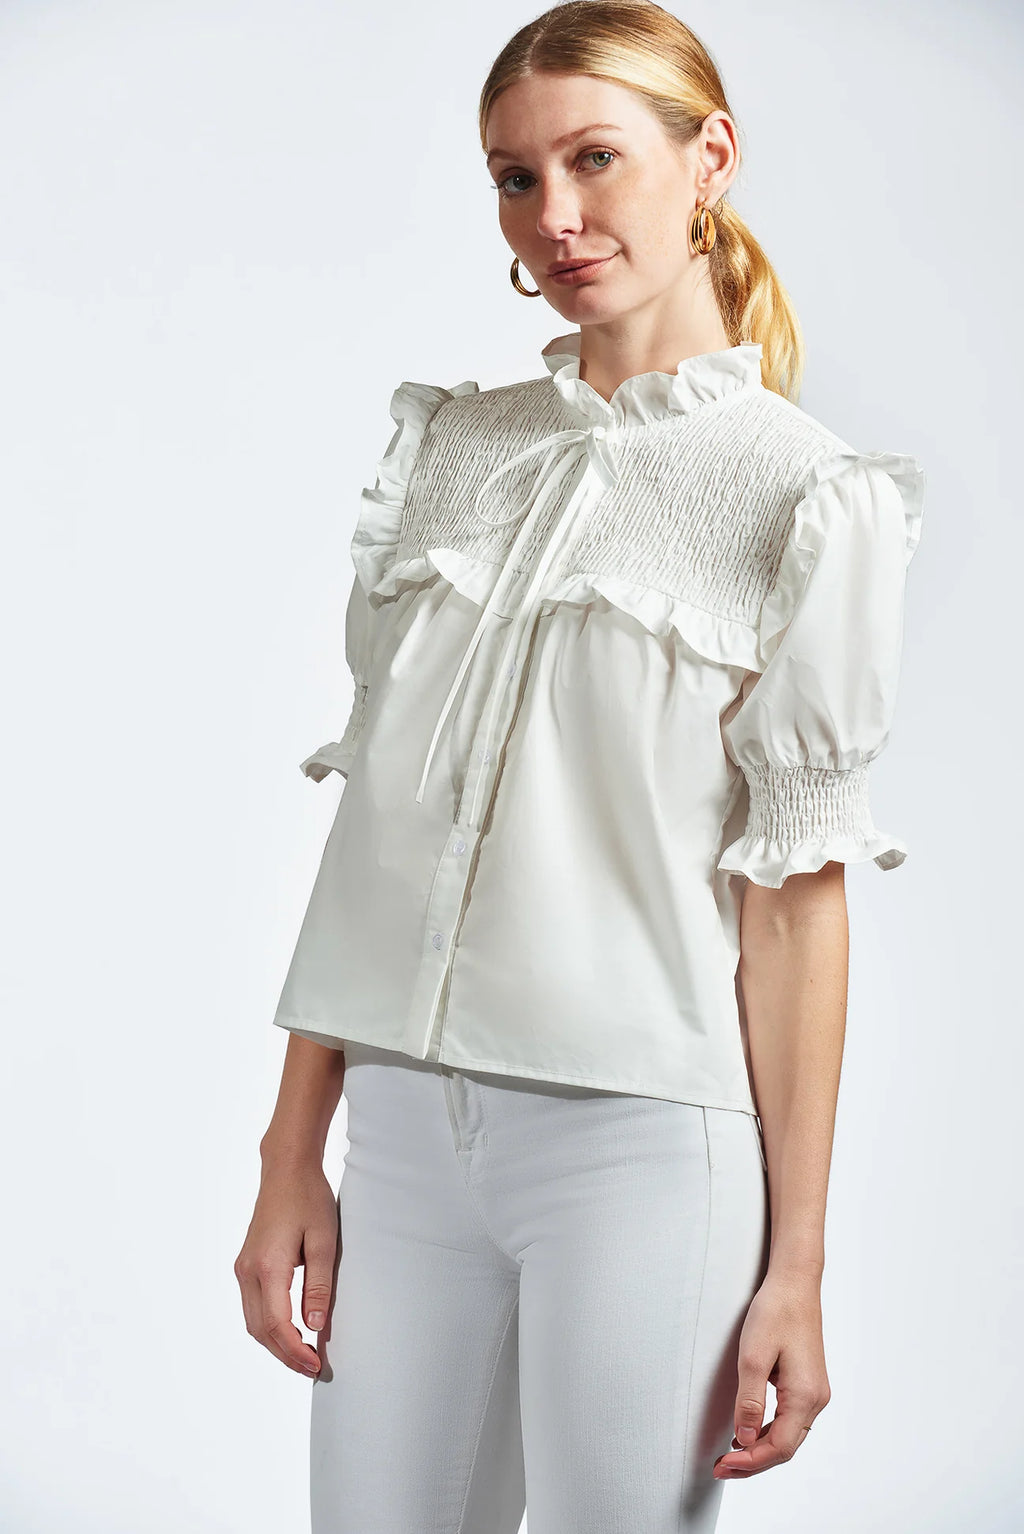 The Nicolette Shirt White